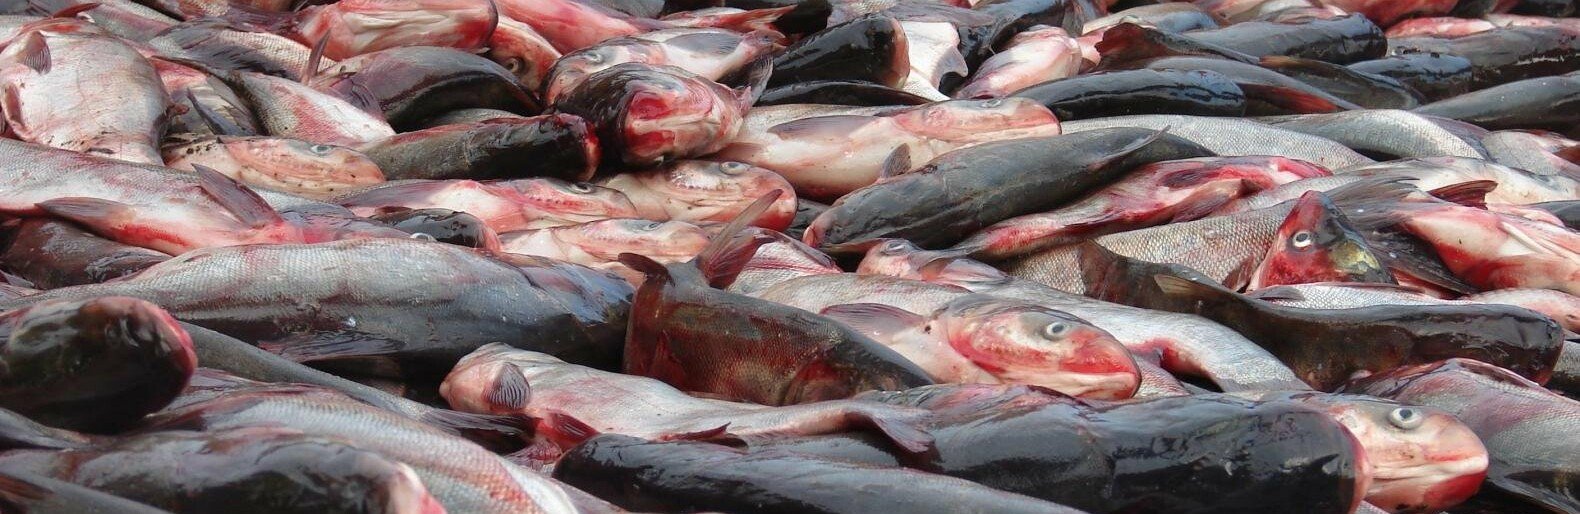 В Ростовской области зафиксировали дефицит рыбы